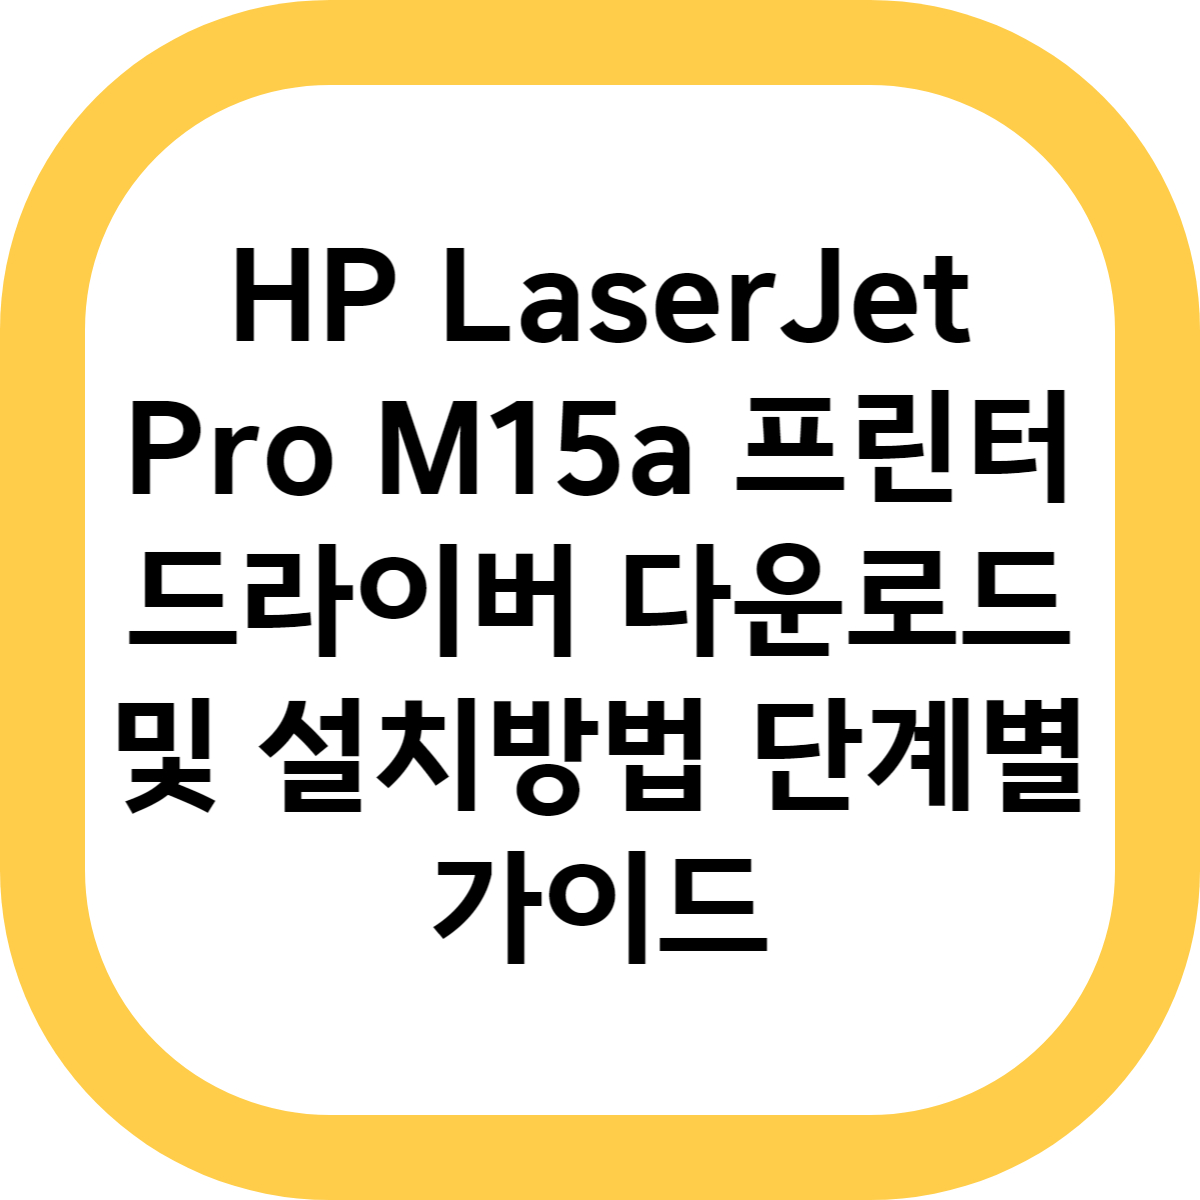 HP LaserJet Pro M15a 프린터 드라이버 다운로드 및 설치방법 단계별 가이드